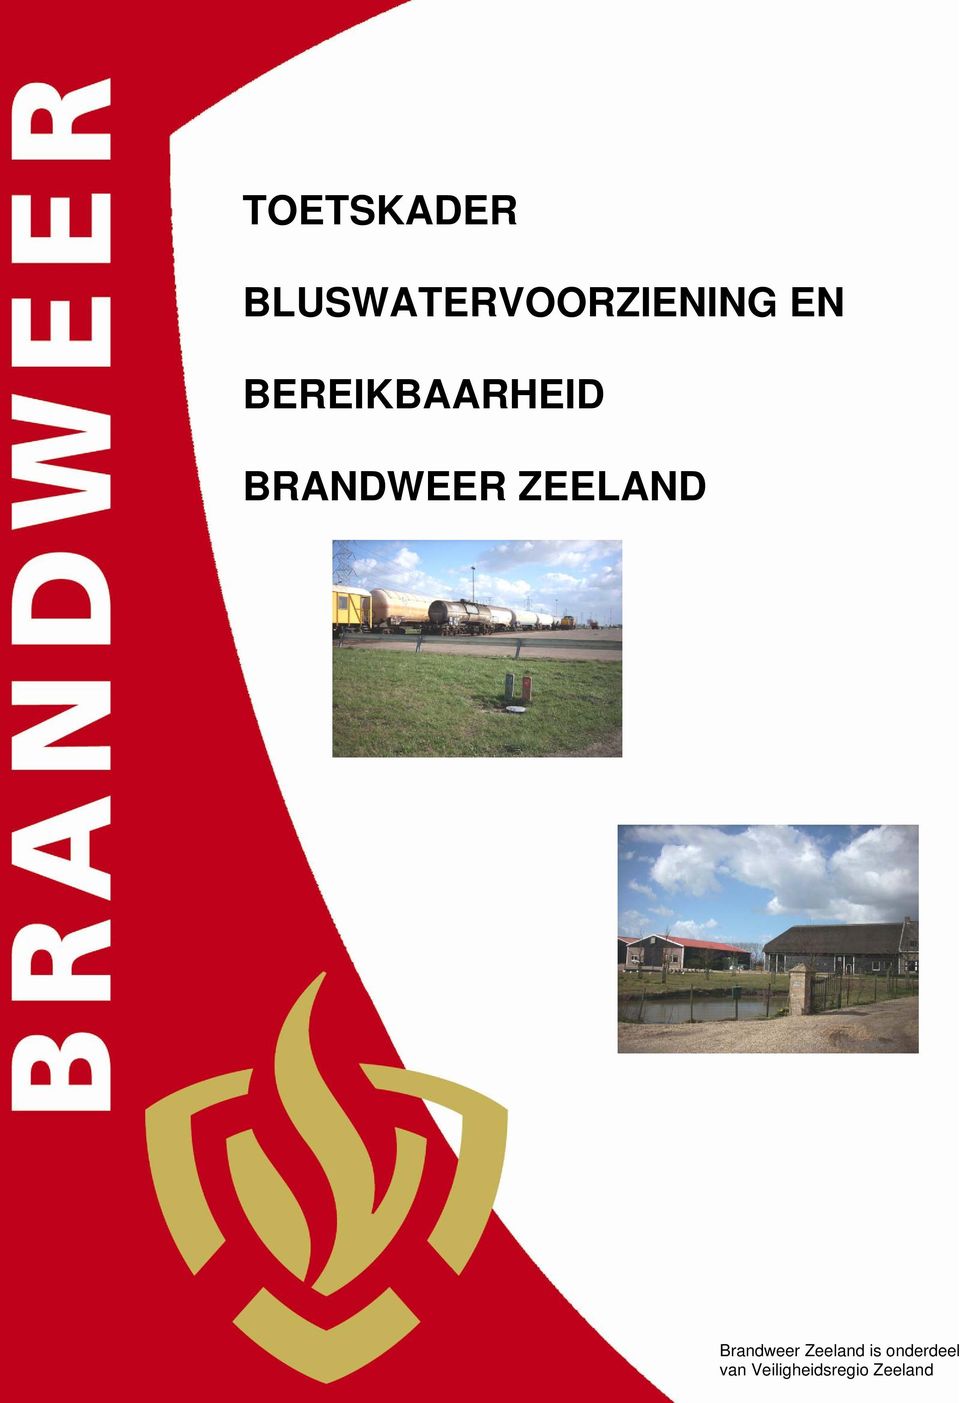 ZEELAND - 0 - Brandweer Zeeland